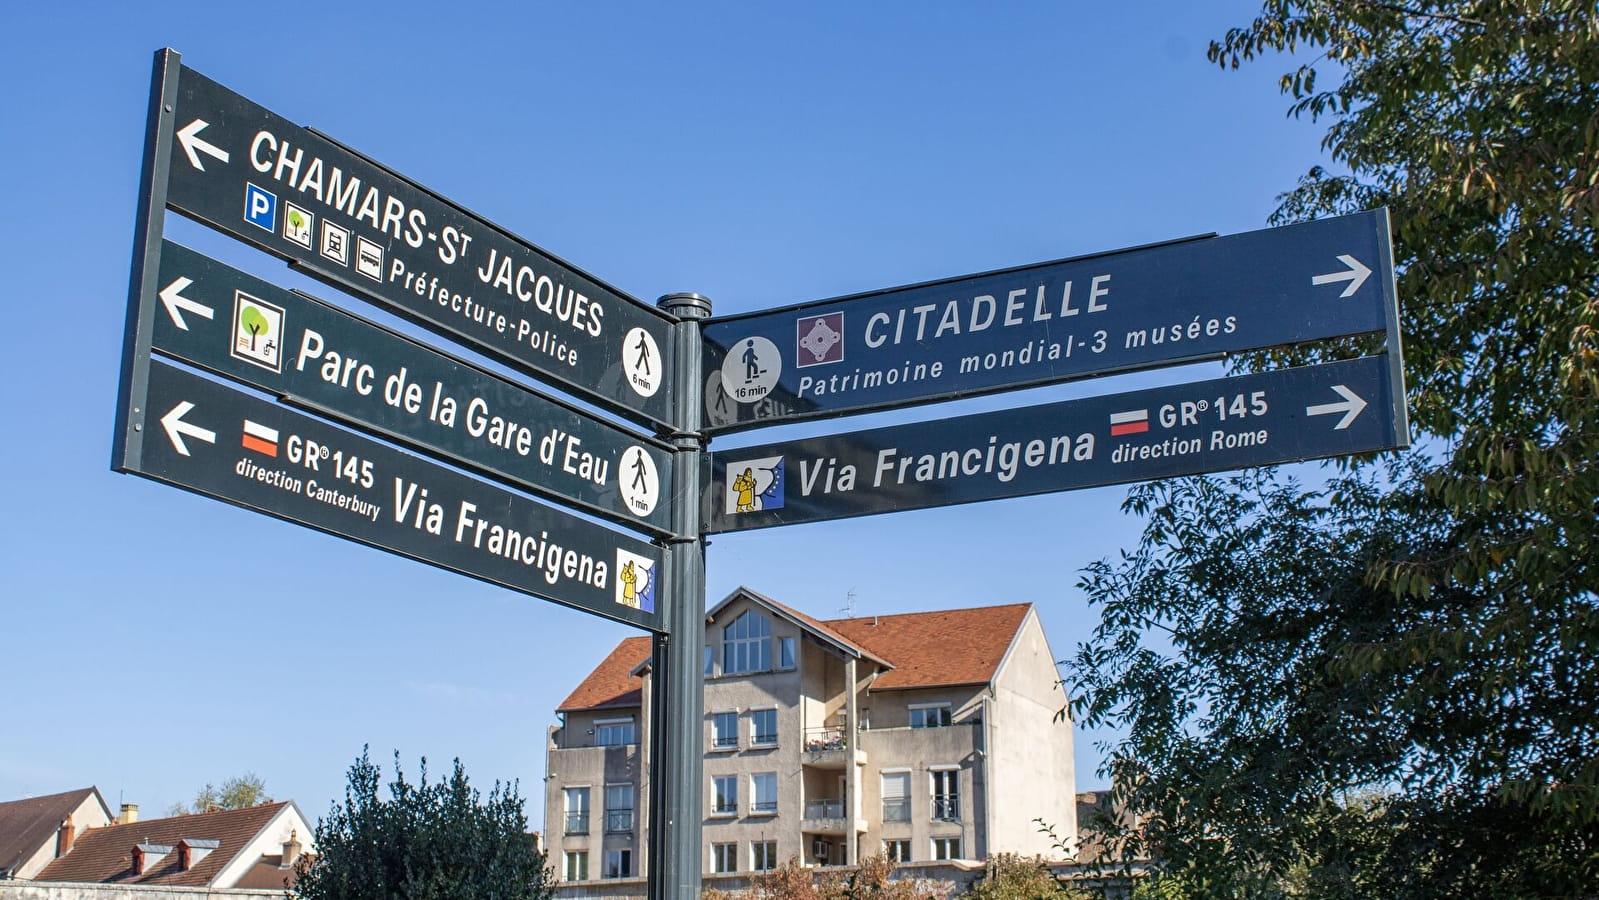 The Via Francigena in Burgundy